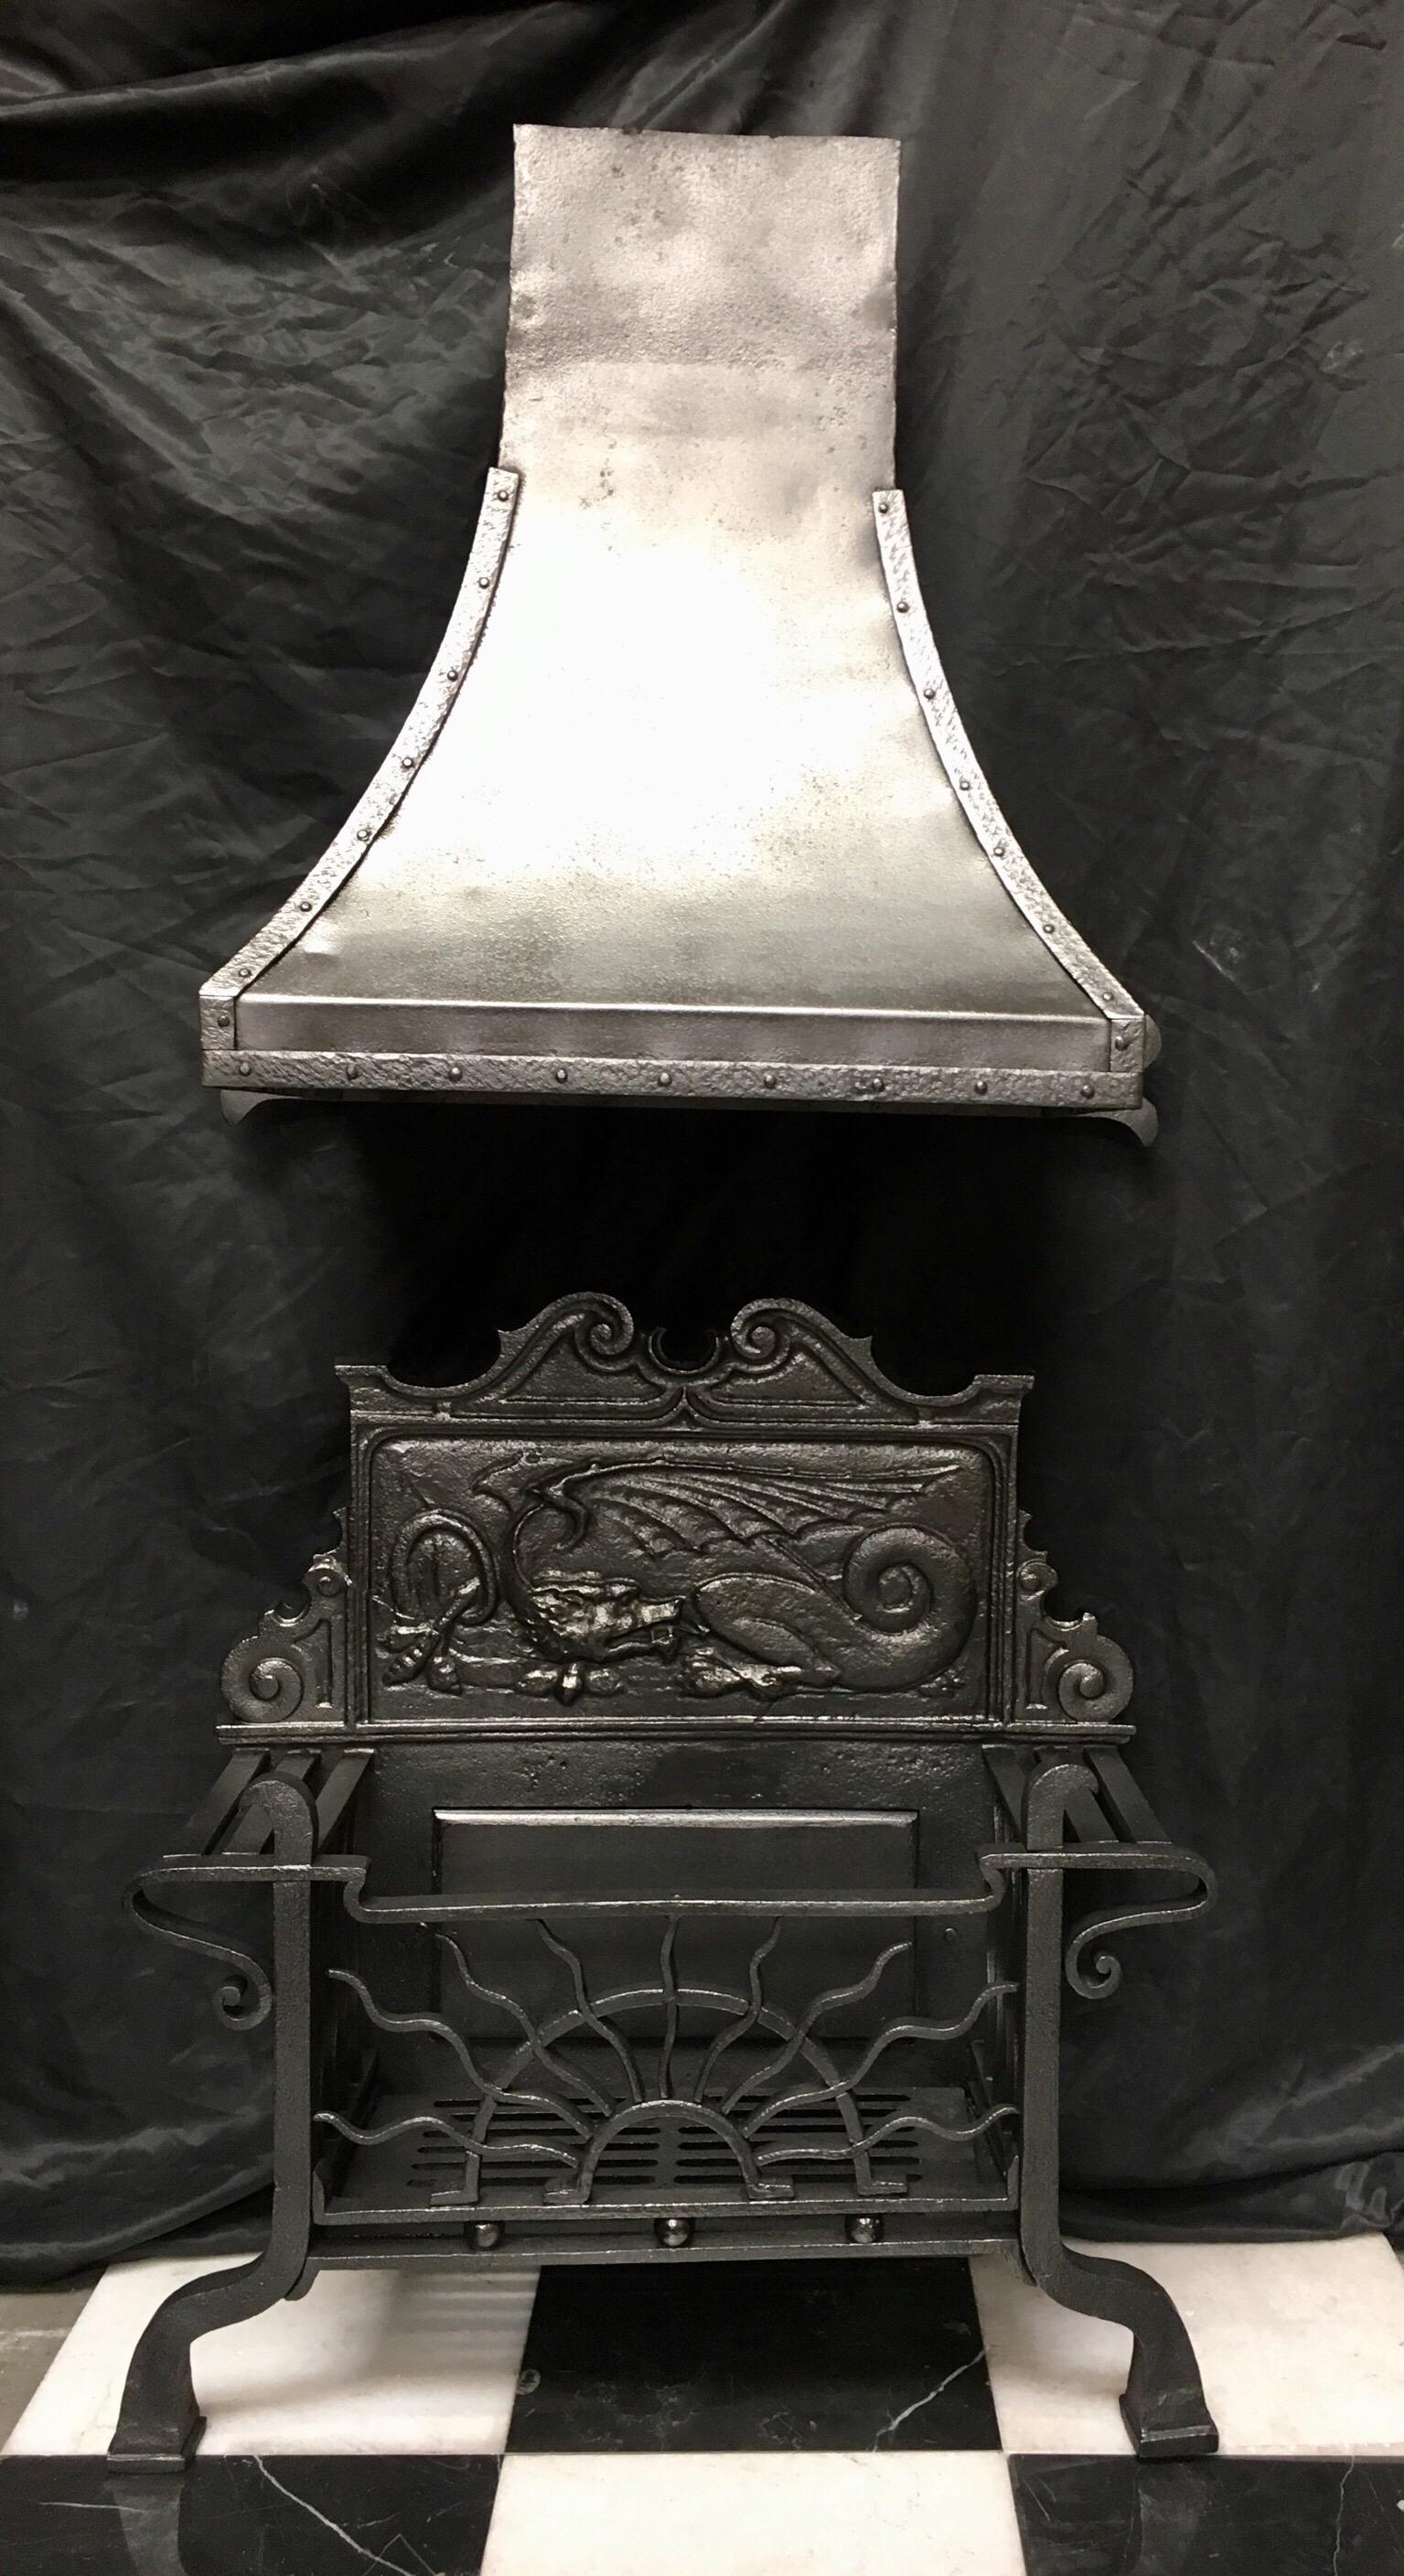 Ein originaler, antiker Feuerrostkorb aus Schmiedeeisen aus dem 19. Jahrhundert in der Aesthetic Manier mit der originalen, geschwungenen Kaminhaube. Eine hohe kartuschenförmige Feuerrückwand mit einem zentralen stilisierten Drachen in einem